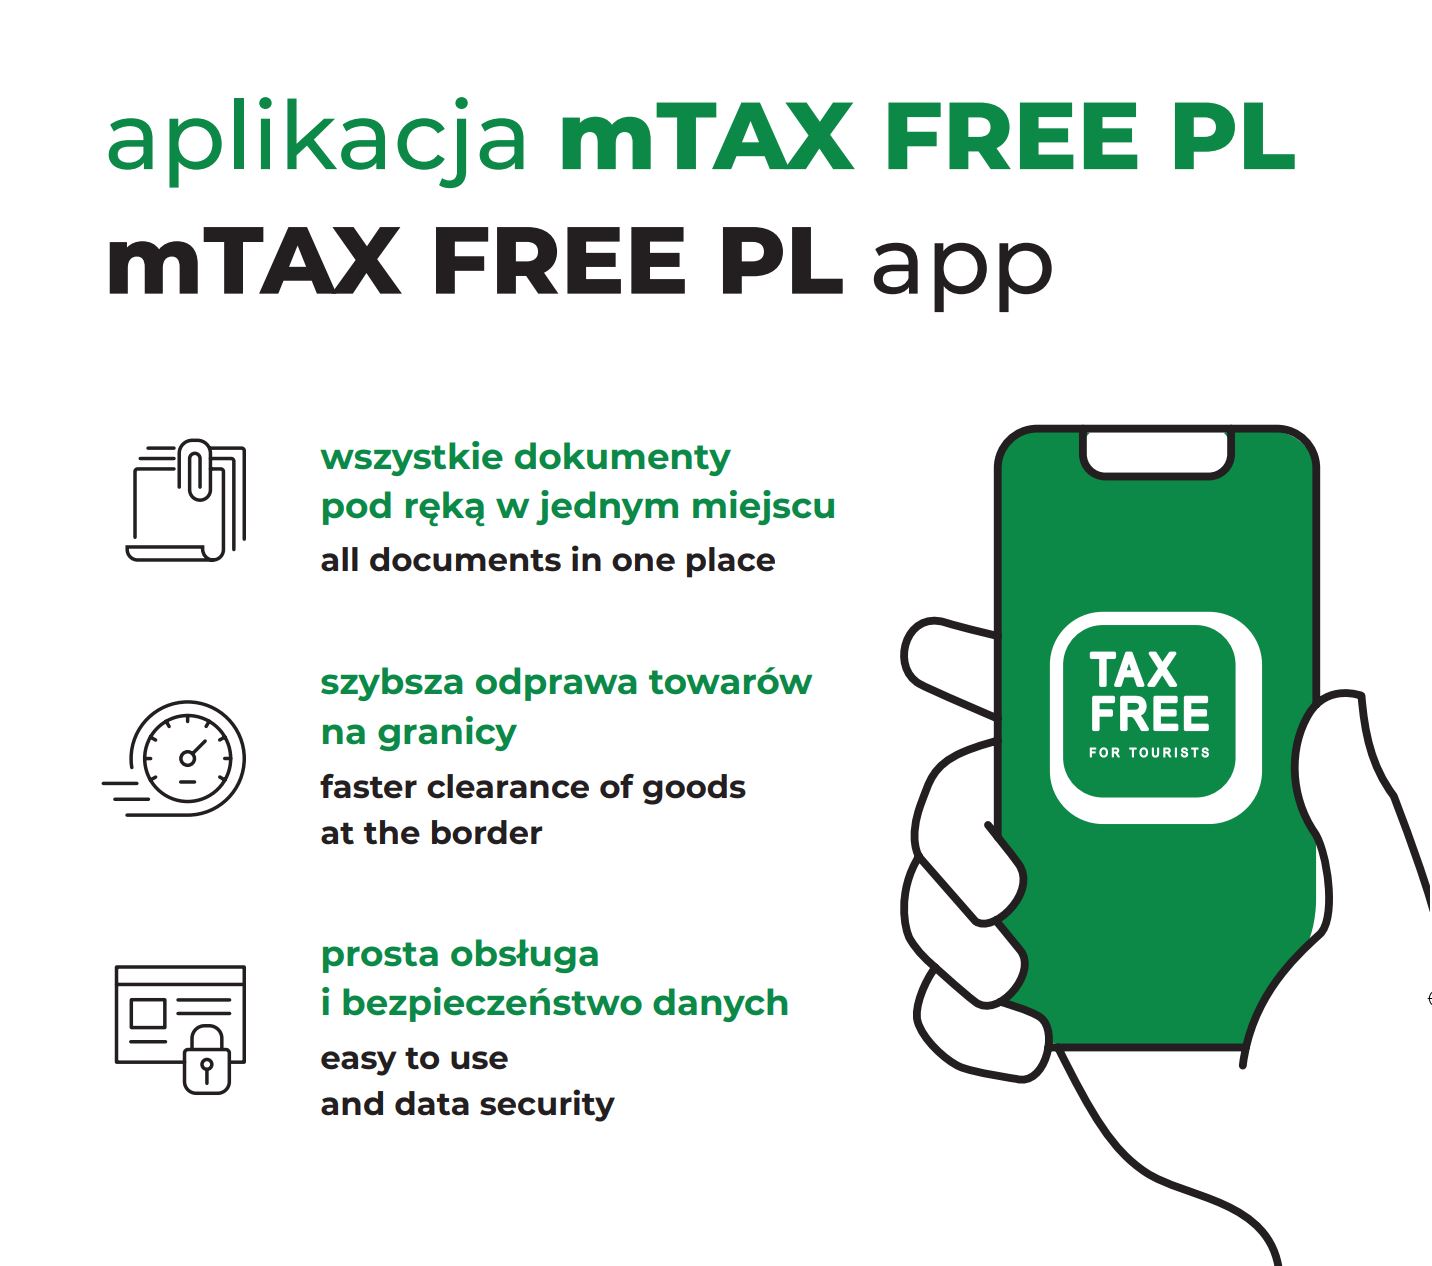 Plakat promujący aplikację mobilną mTAX FREE.